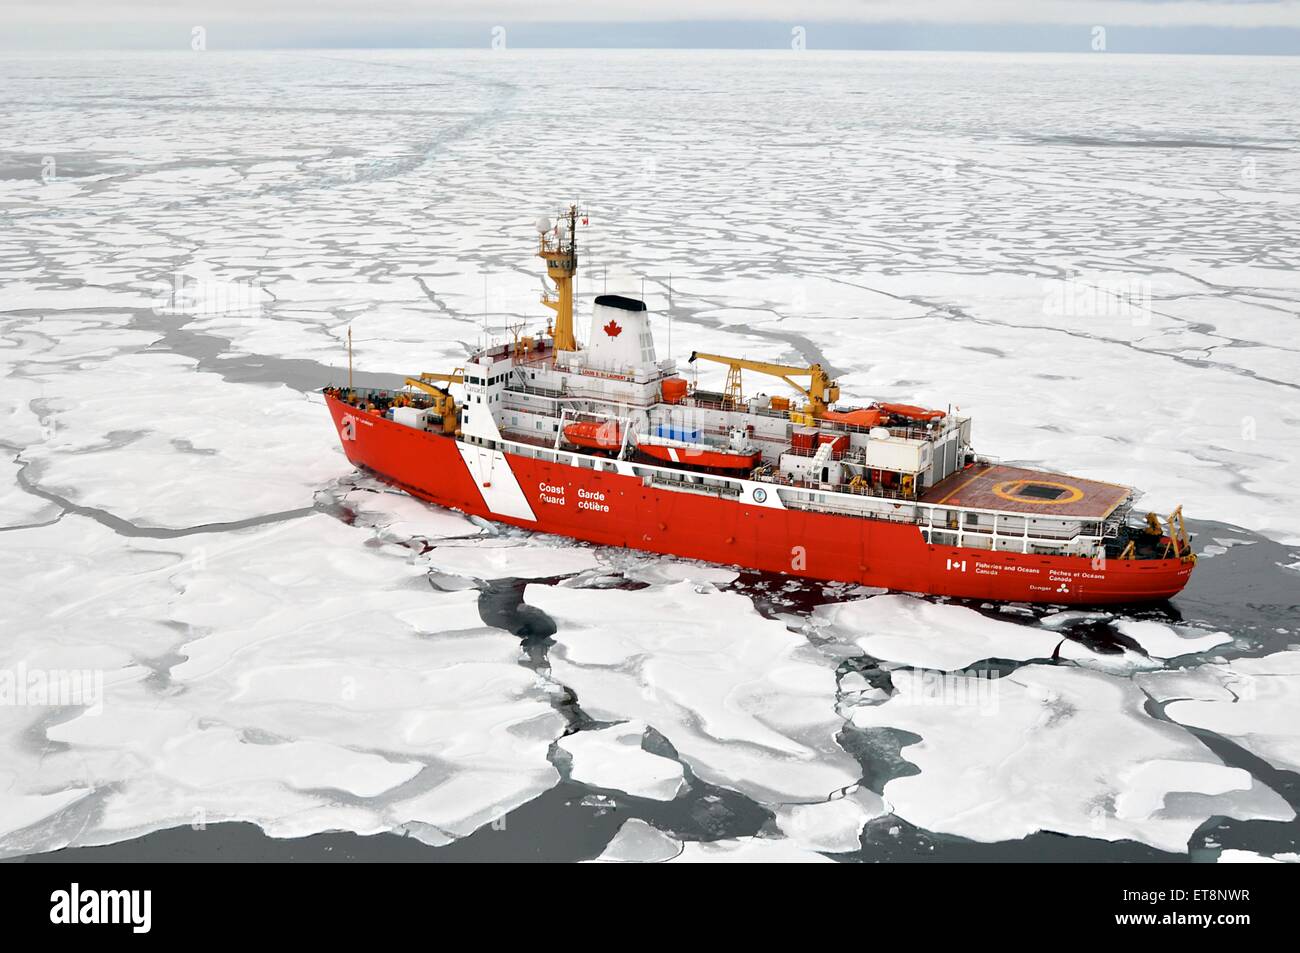 US Coast Guard Cutter Healy rompe el hielo el 5 de septiembre de 2009 en el Ártico. El Healy es la última y más avanzada tecnológicamente rompehielos polares poseído por la Guardia Costera. Foto de stock